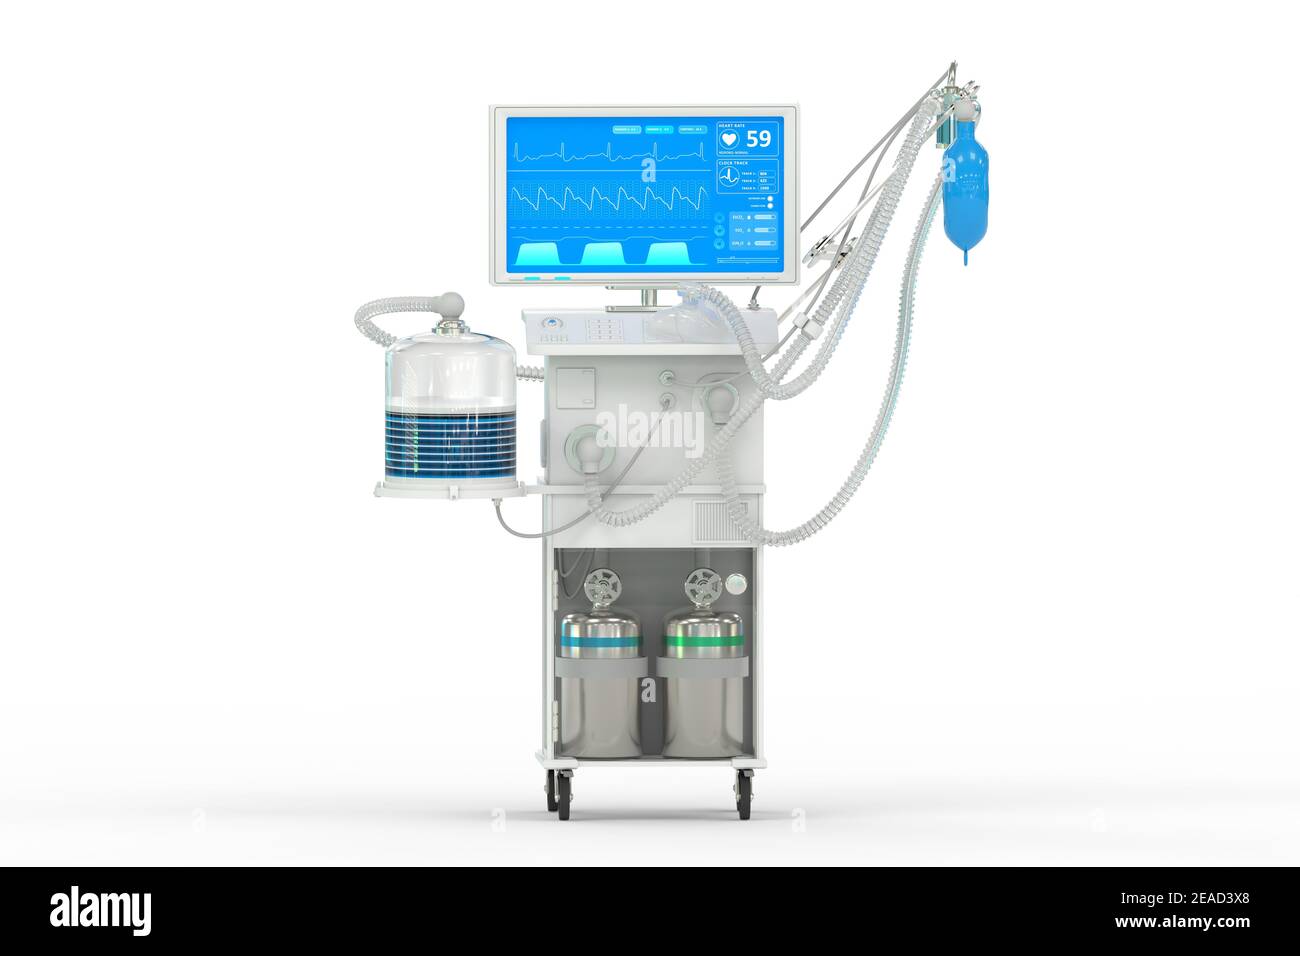 ICU künstlicher Lungenventilator mit fiktivem Design, isometrische Ansicht isoliert auf weiß - Kampf Coronavirus Konzept, medizinische 3D-Illustration Stockfoto